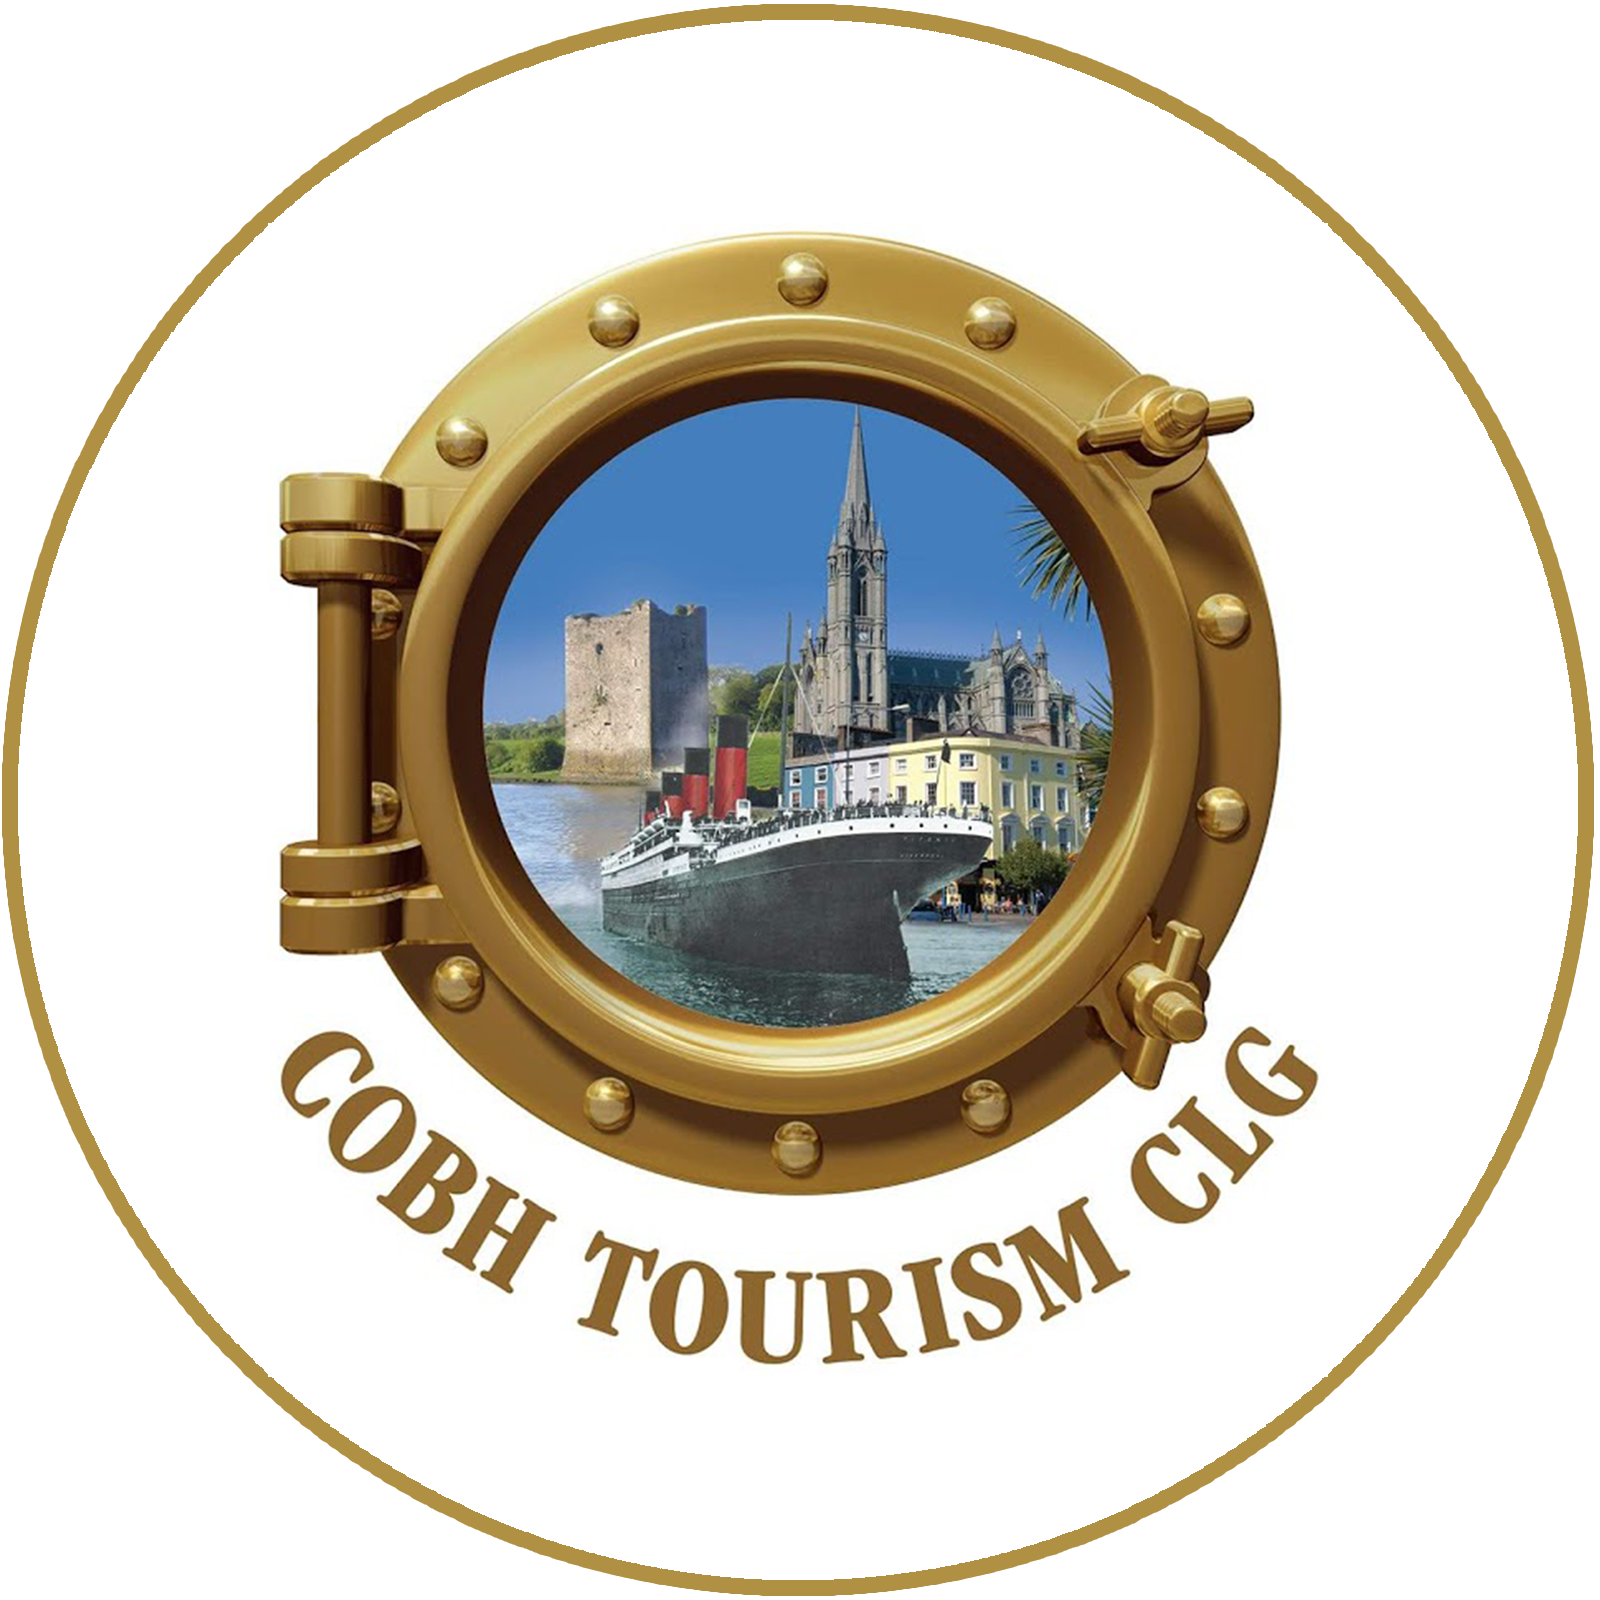 Cobh Tourism